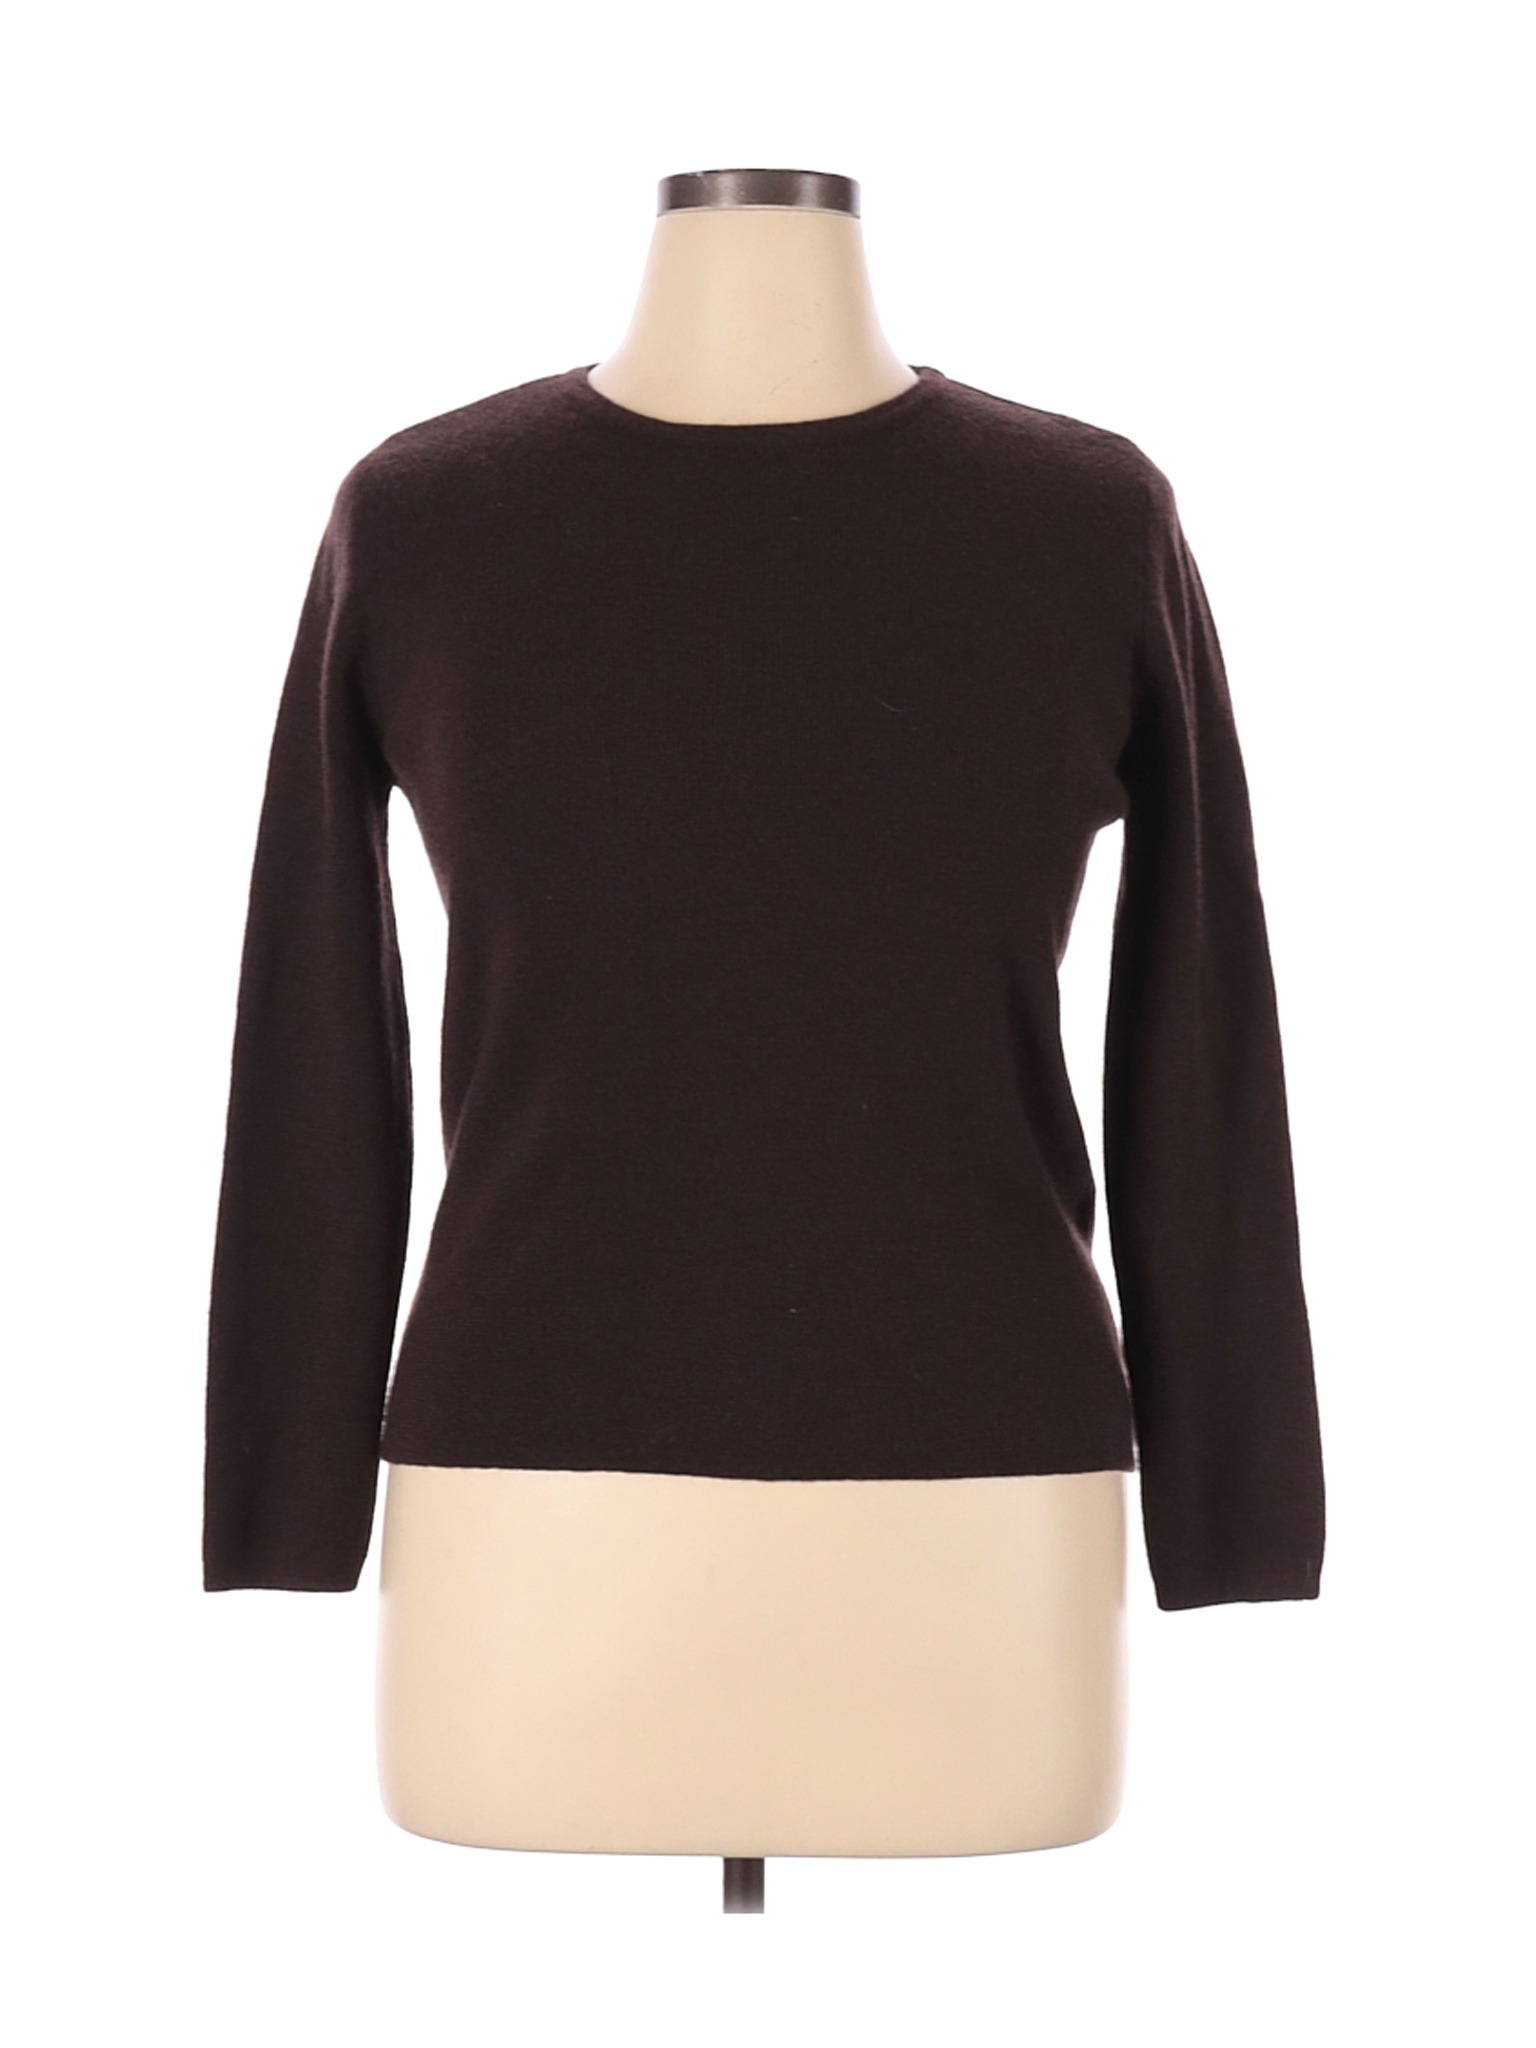 Carole Little Women Brown Wool Pullover Sweater XL | eBay